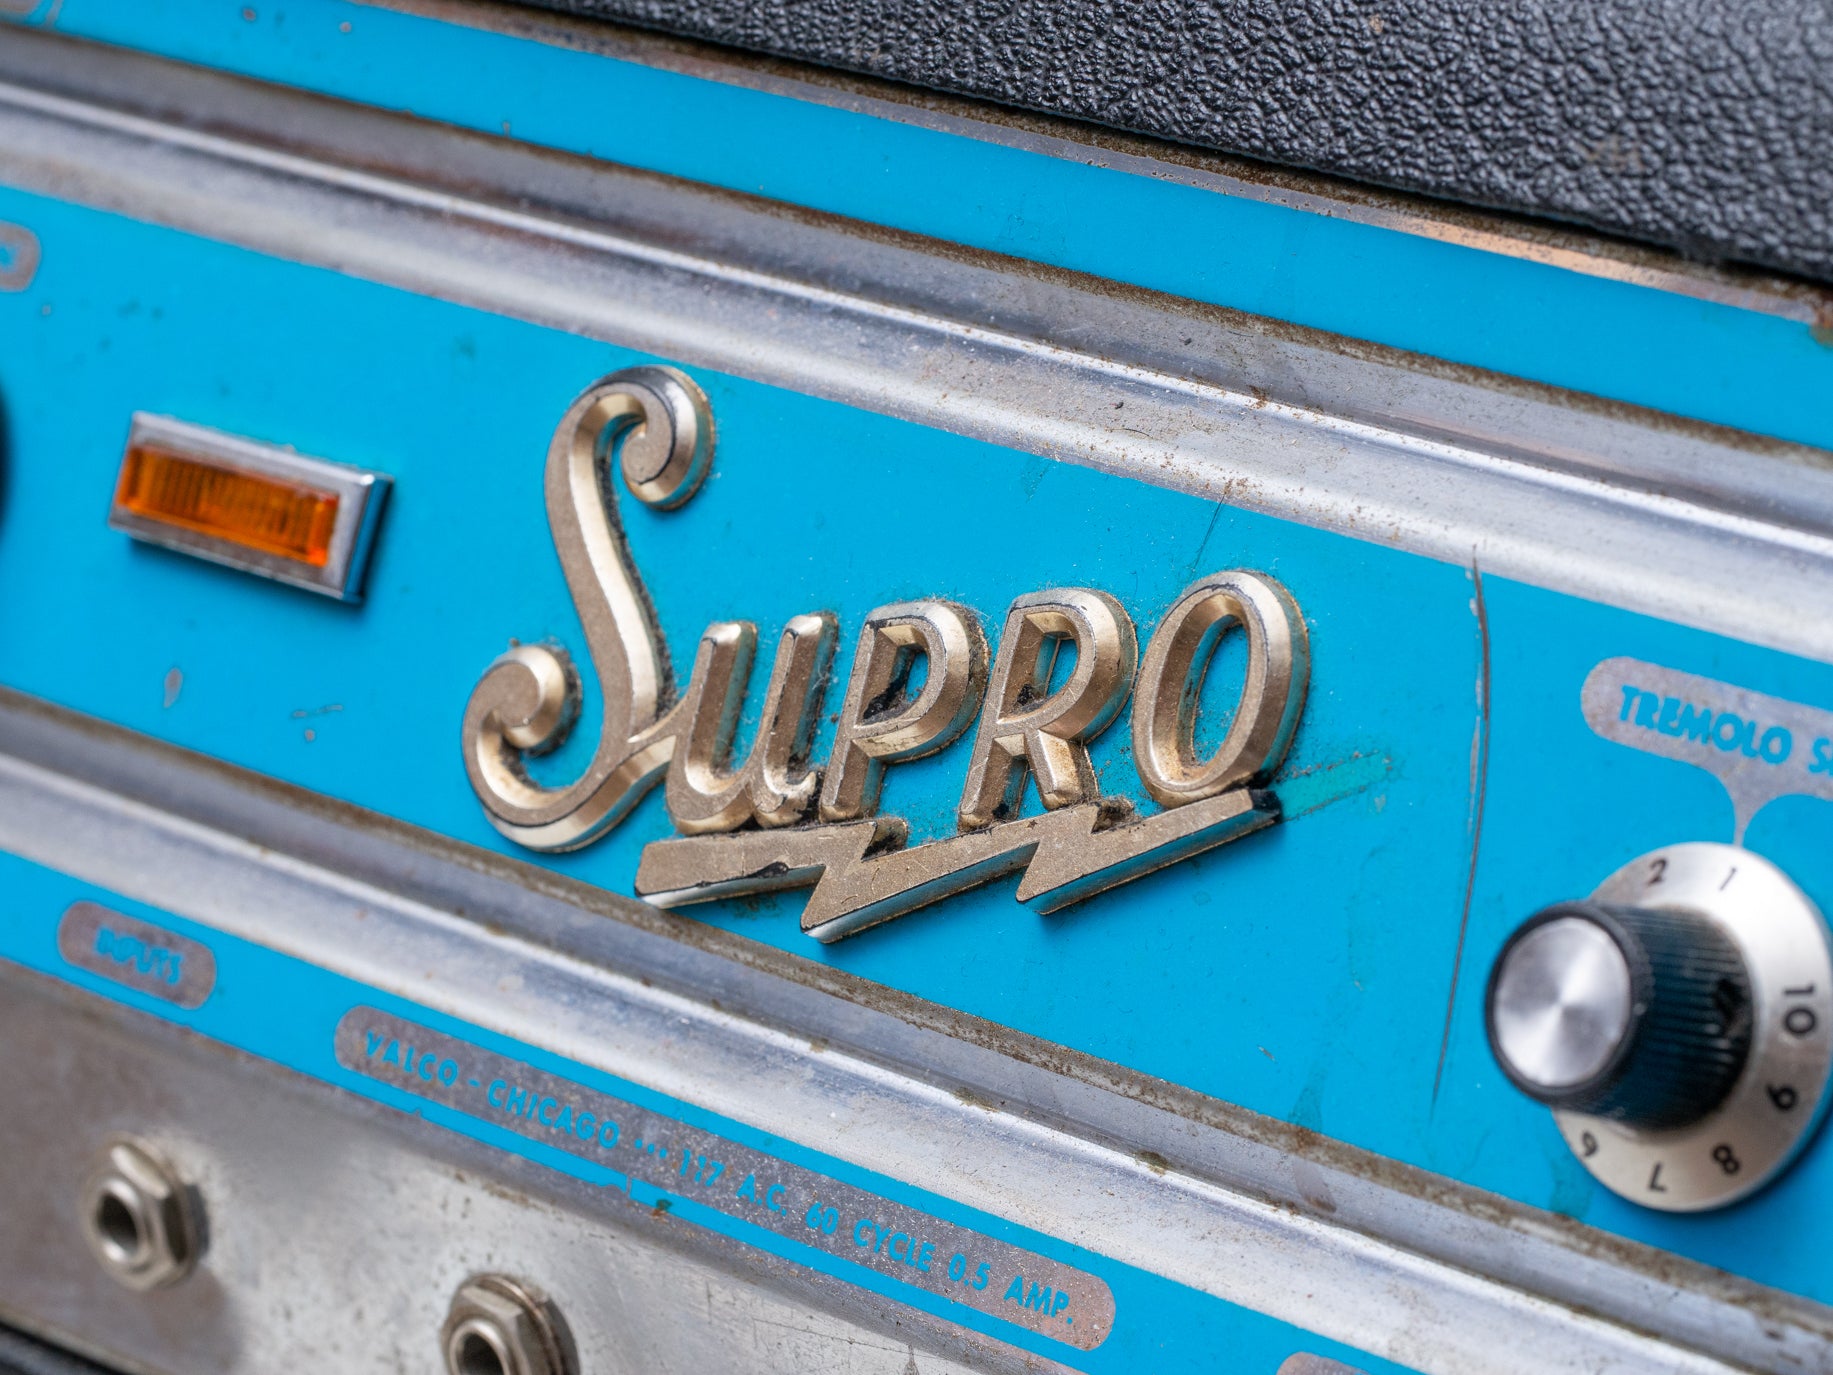 1960s Supro Trojan S6616 Amplifier